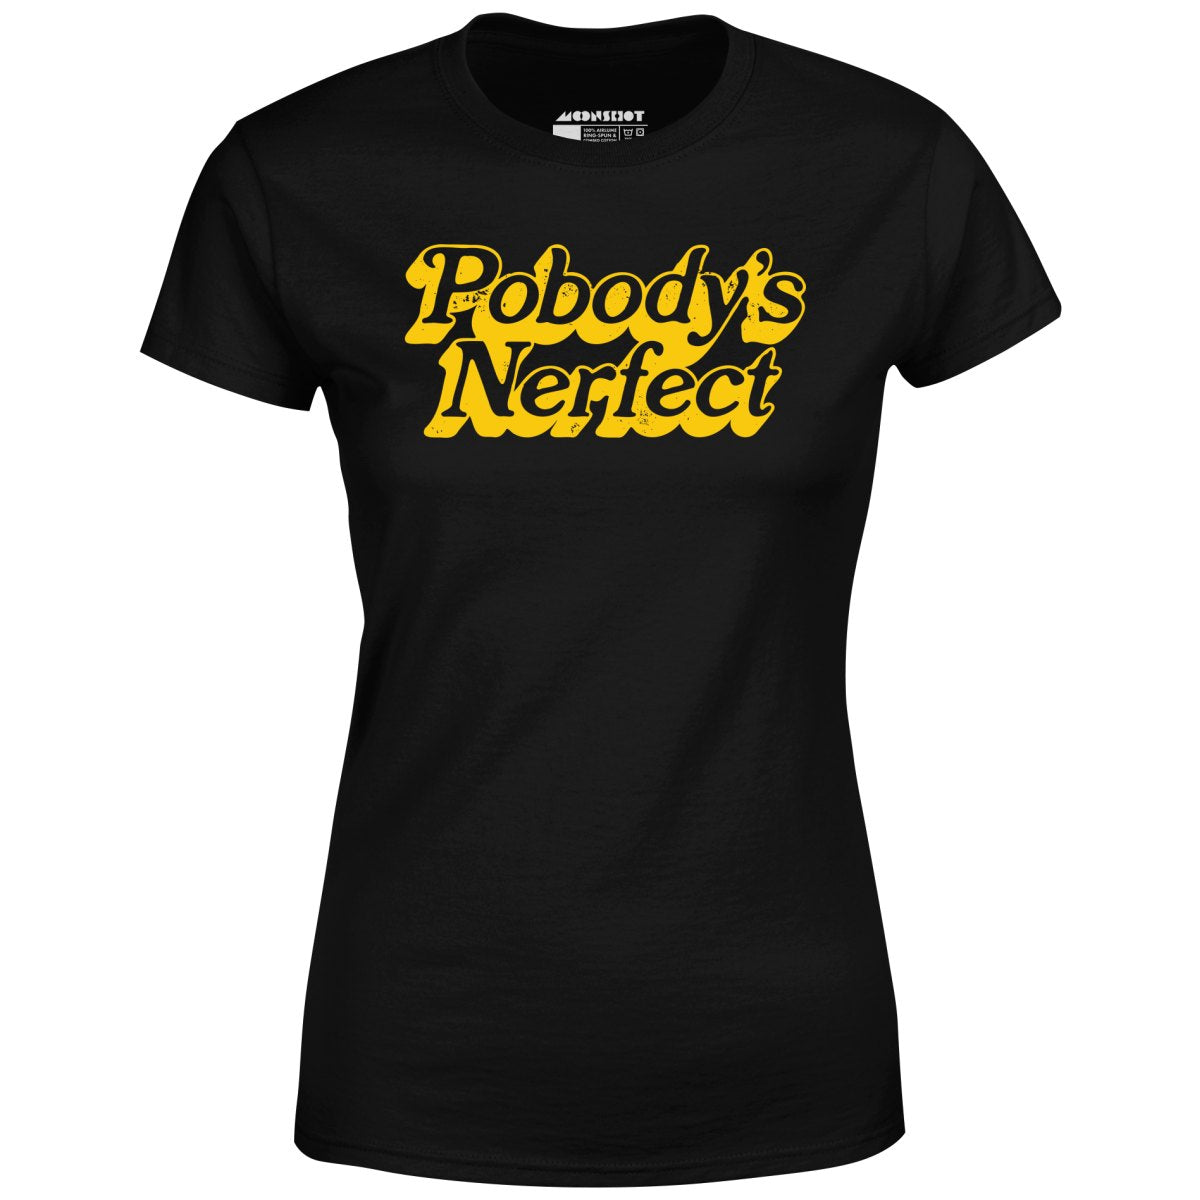 Pobody's Nerfect - Women's T-Shirt